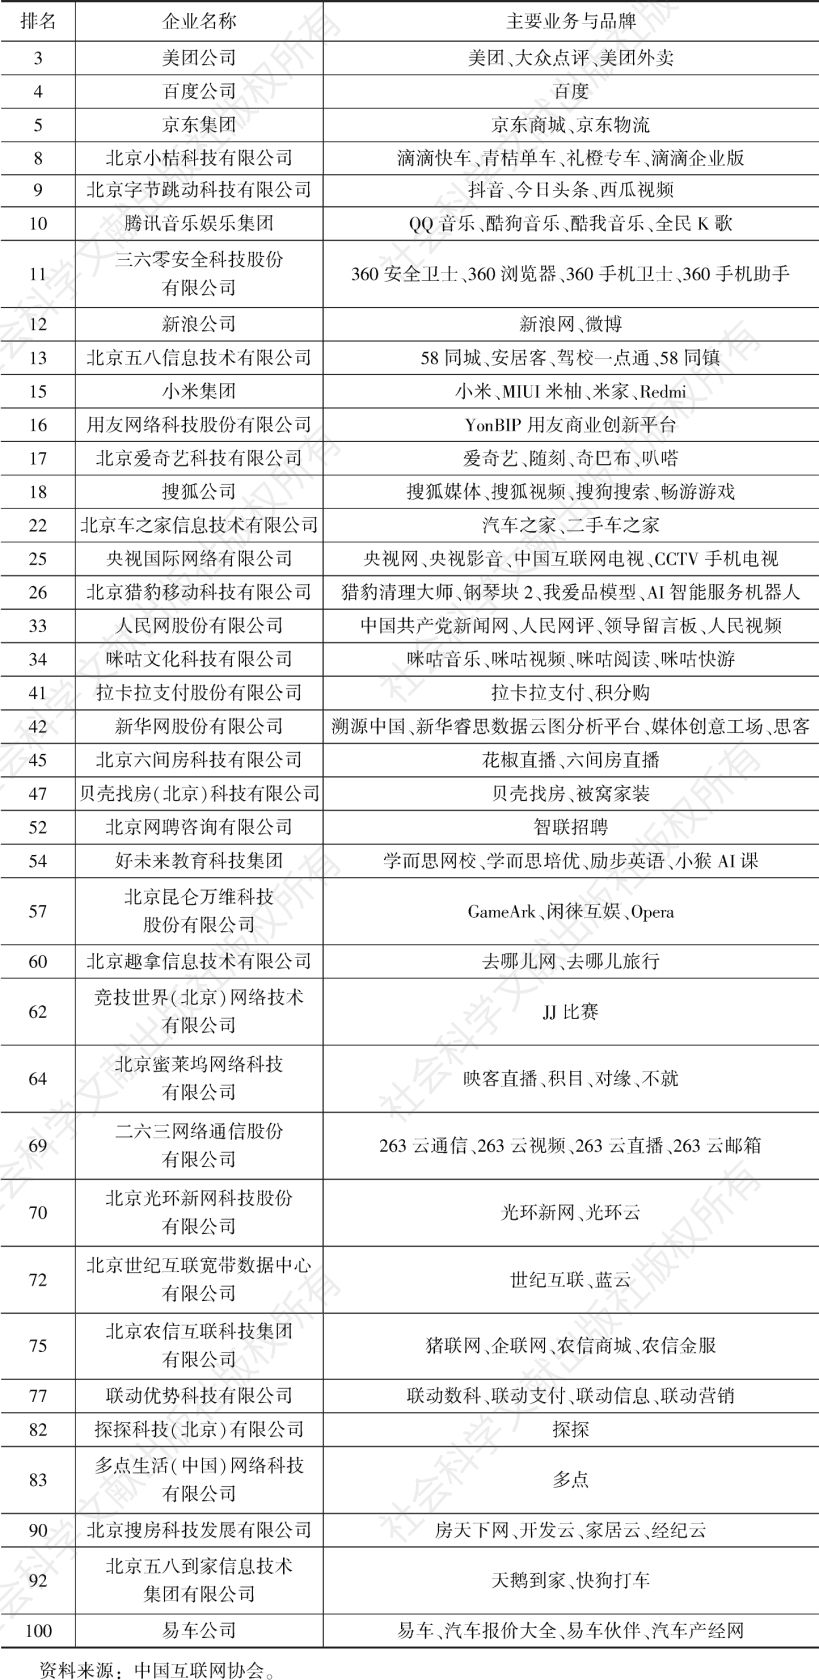 表1 2020年中国互联网企业名单（北京市部分）